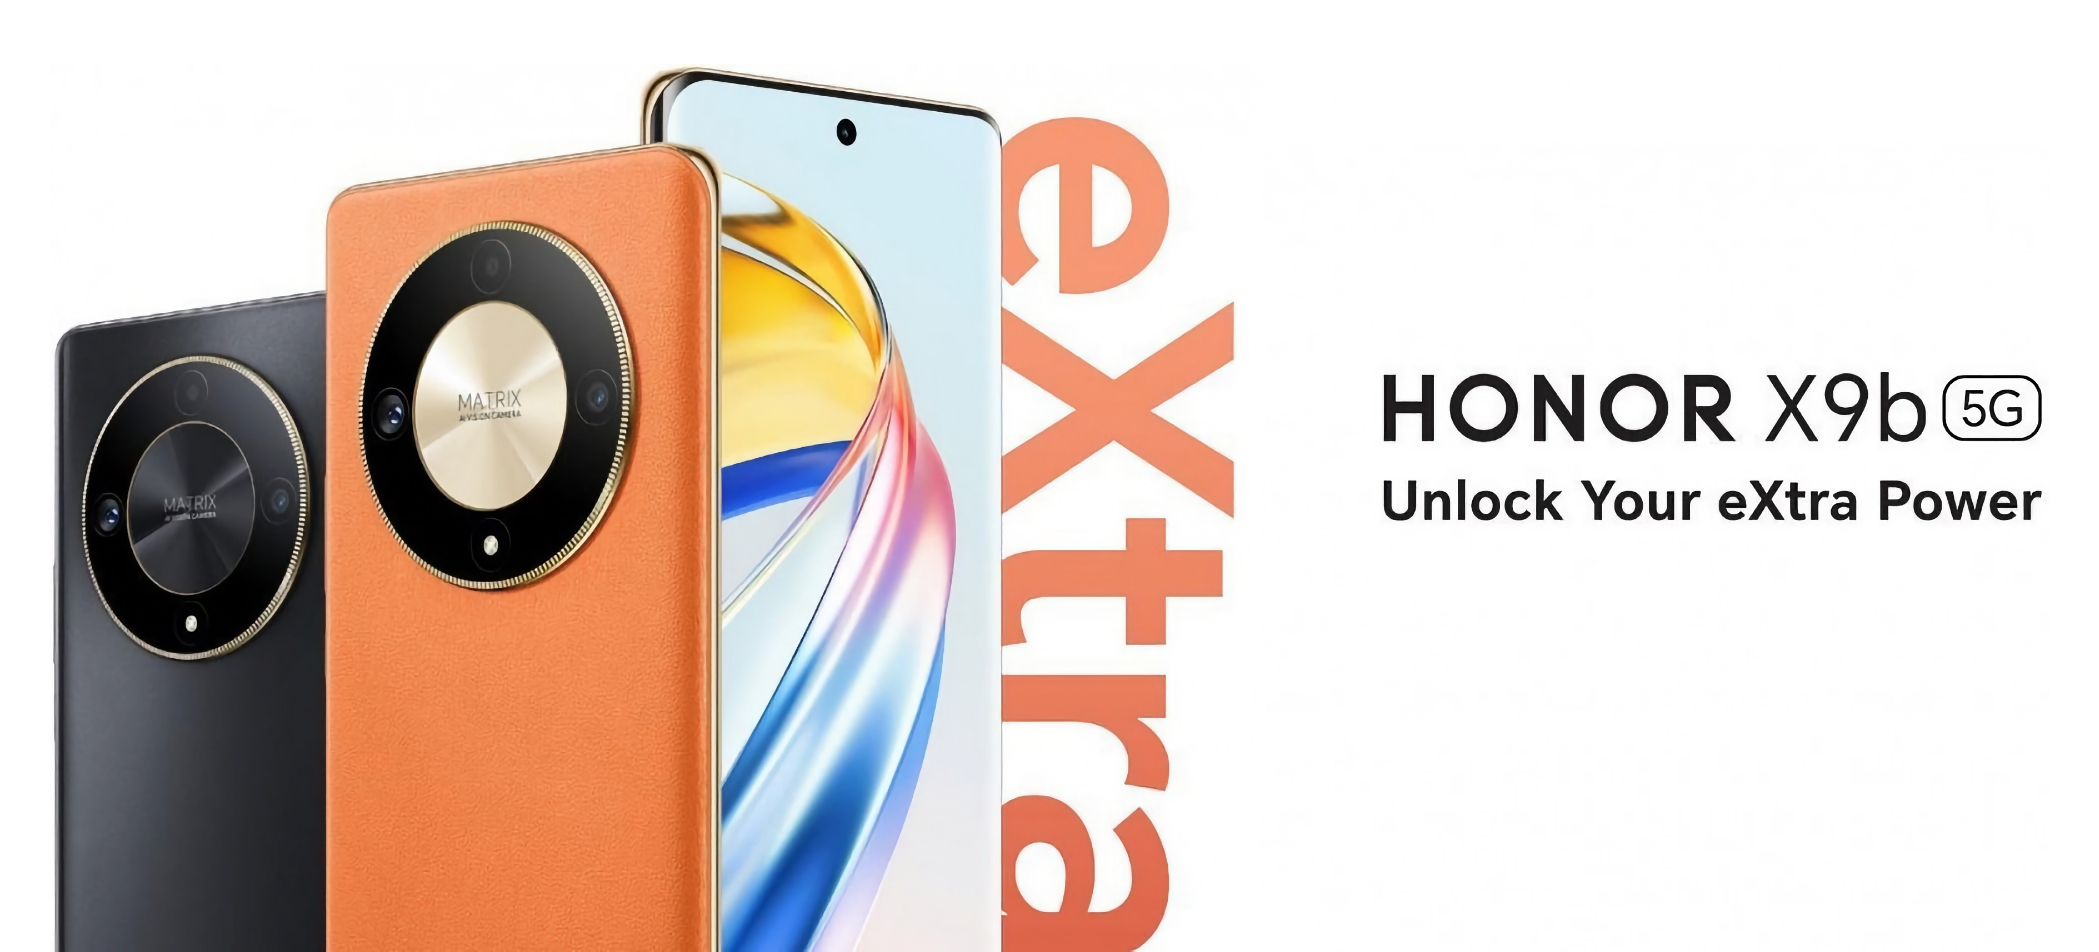 Honor X9b onthuld: smartphone met 120Hz AMOLED-scherm, Snapdragon 6 Gen 1-chip, 108 MP camera en IP53-bescherming voor $ 275